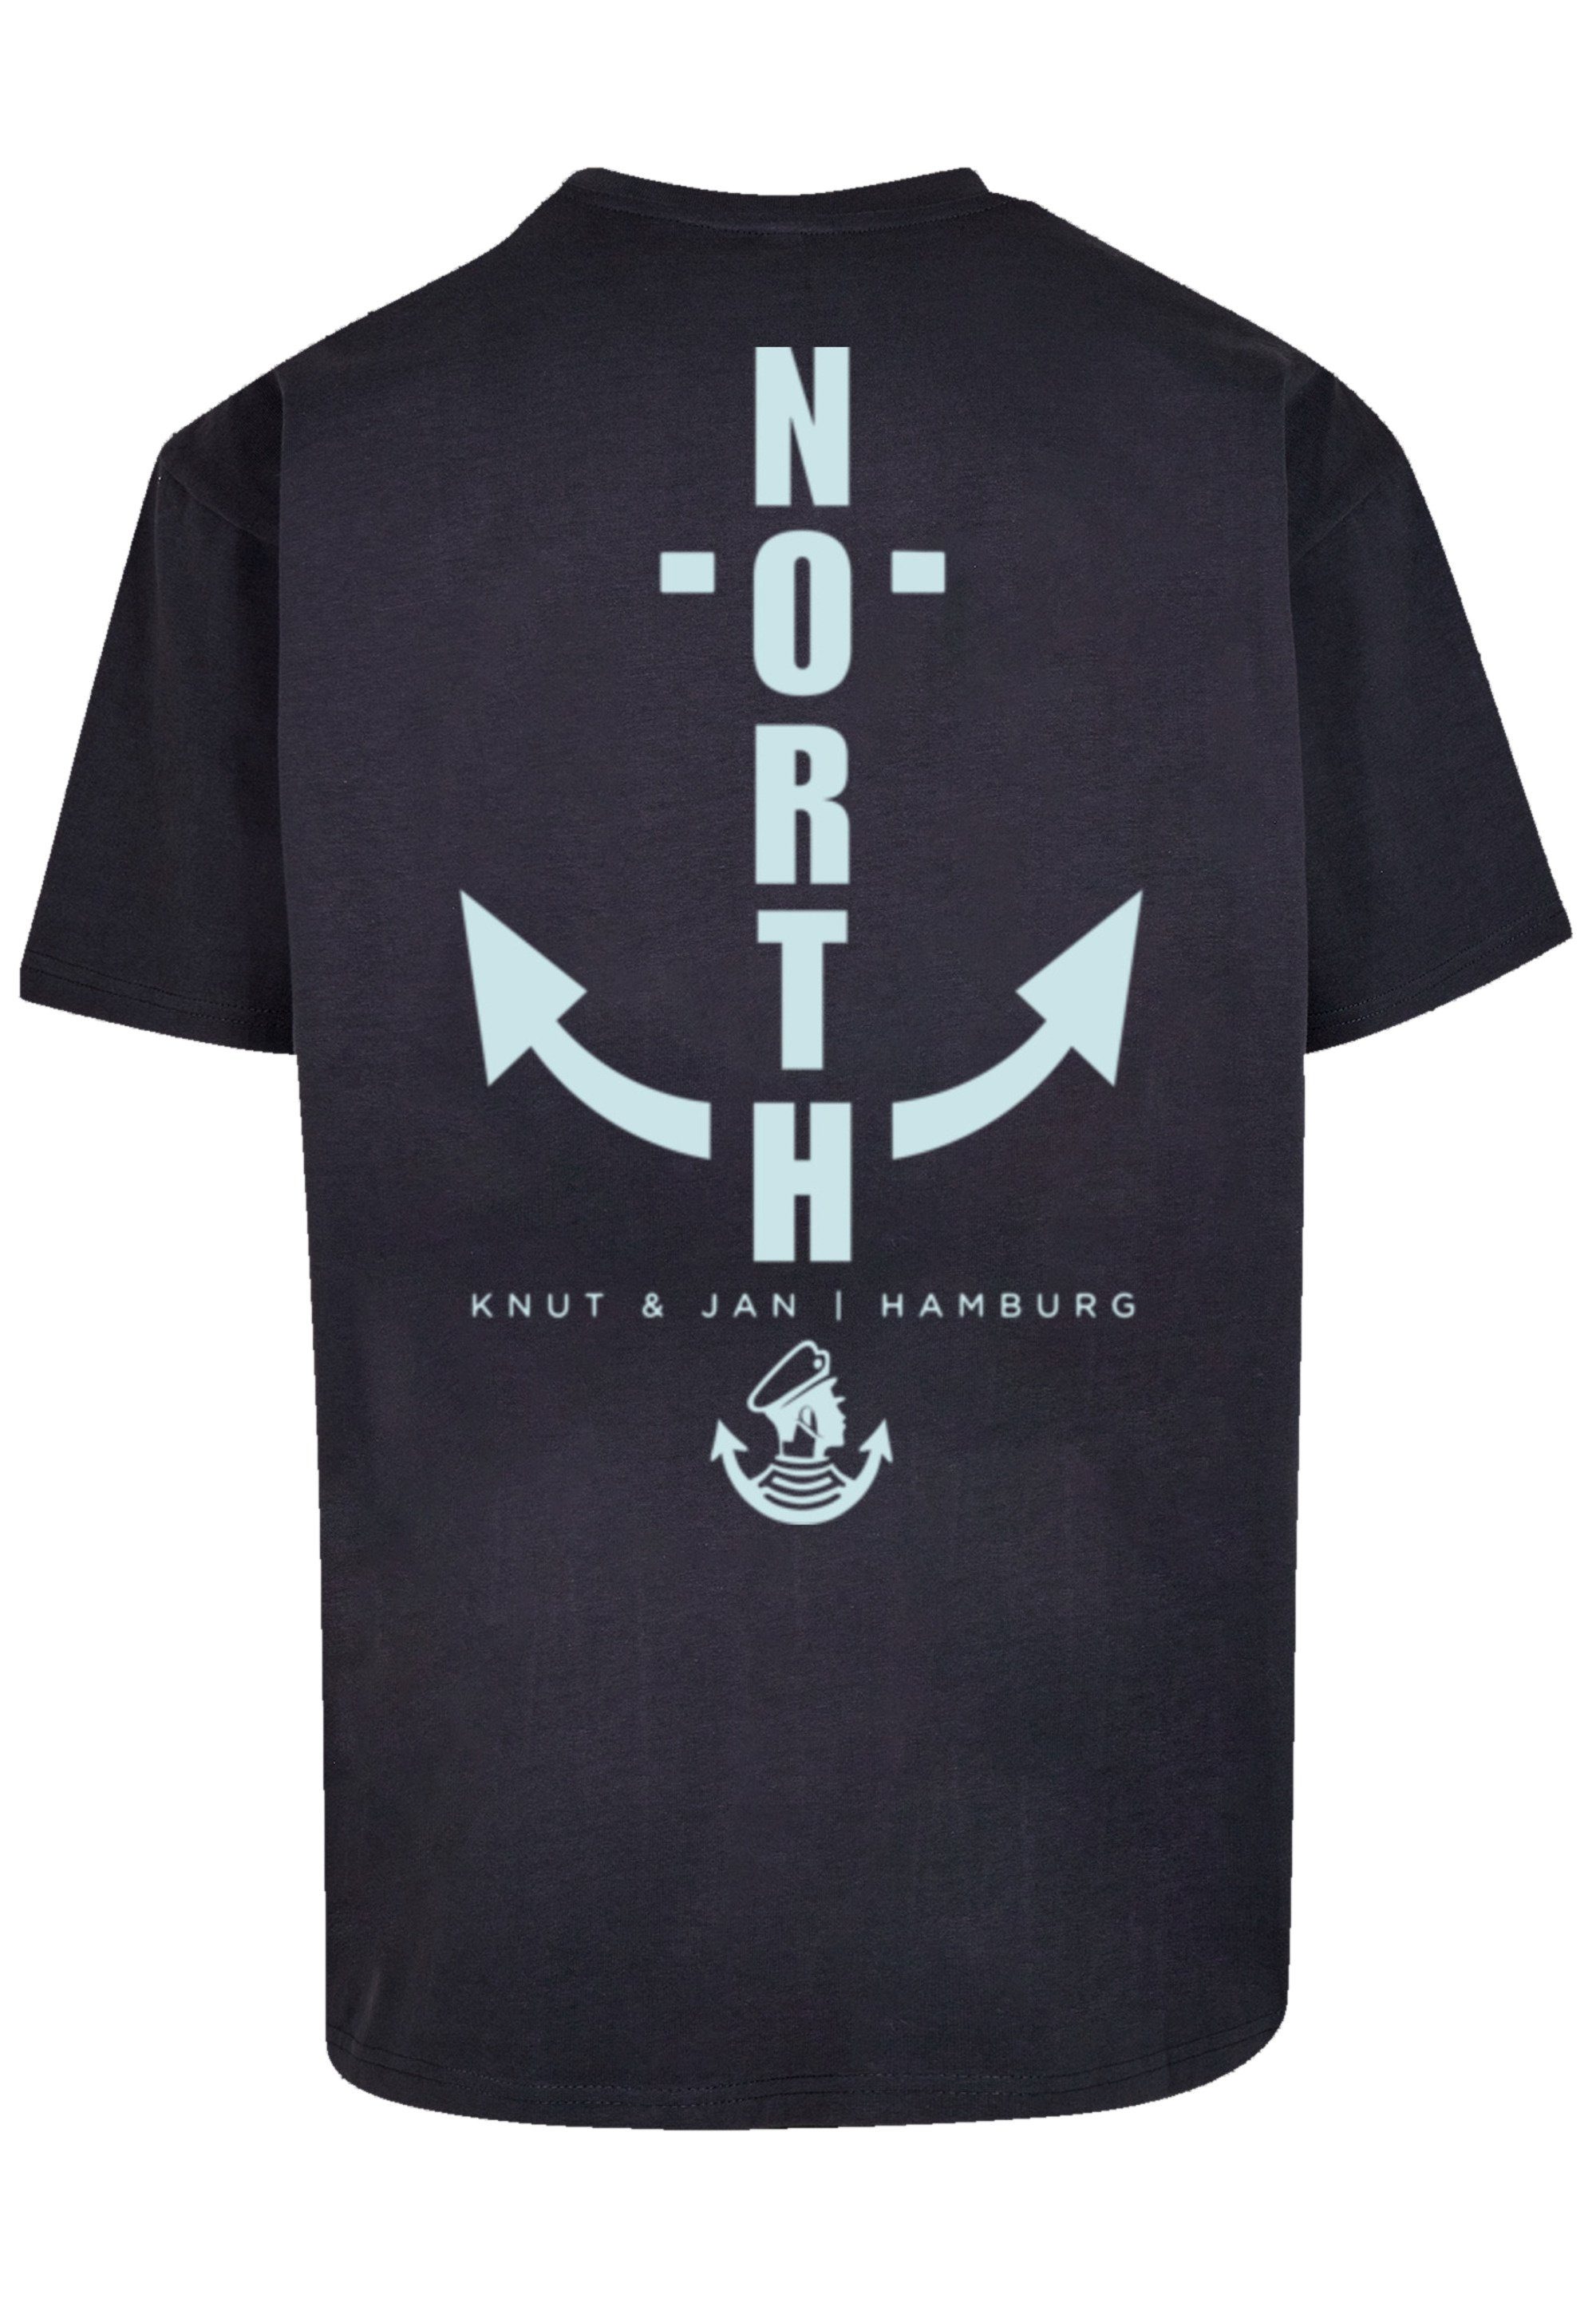 F4NT4STIC T-Shirt Anker Print & Knut navy North Jan Hamburg